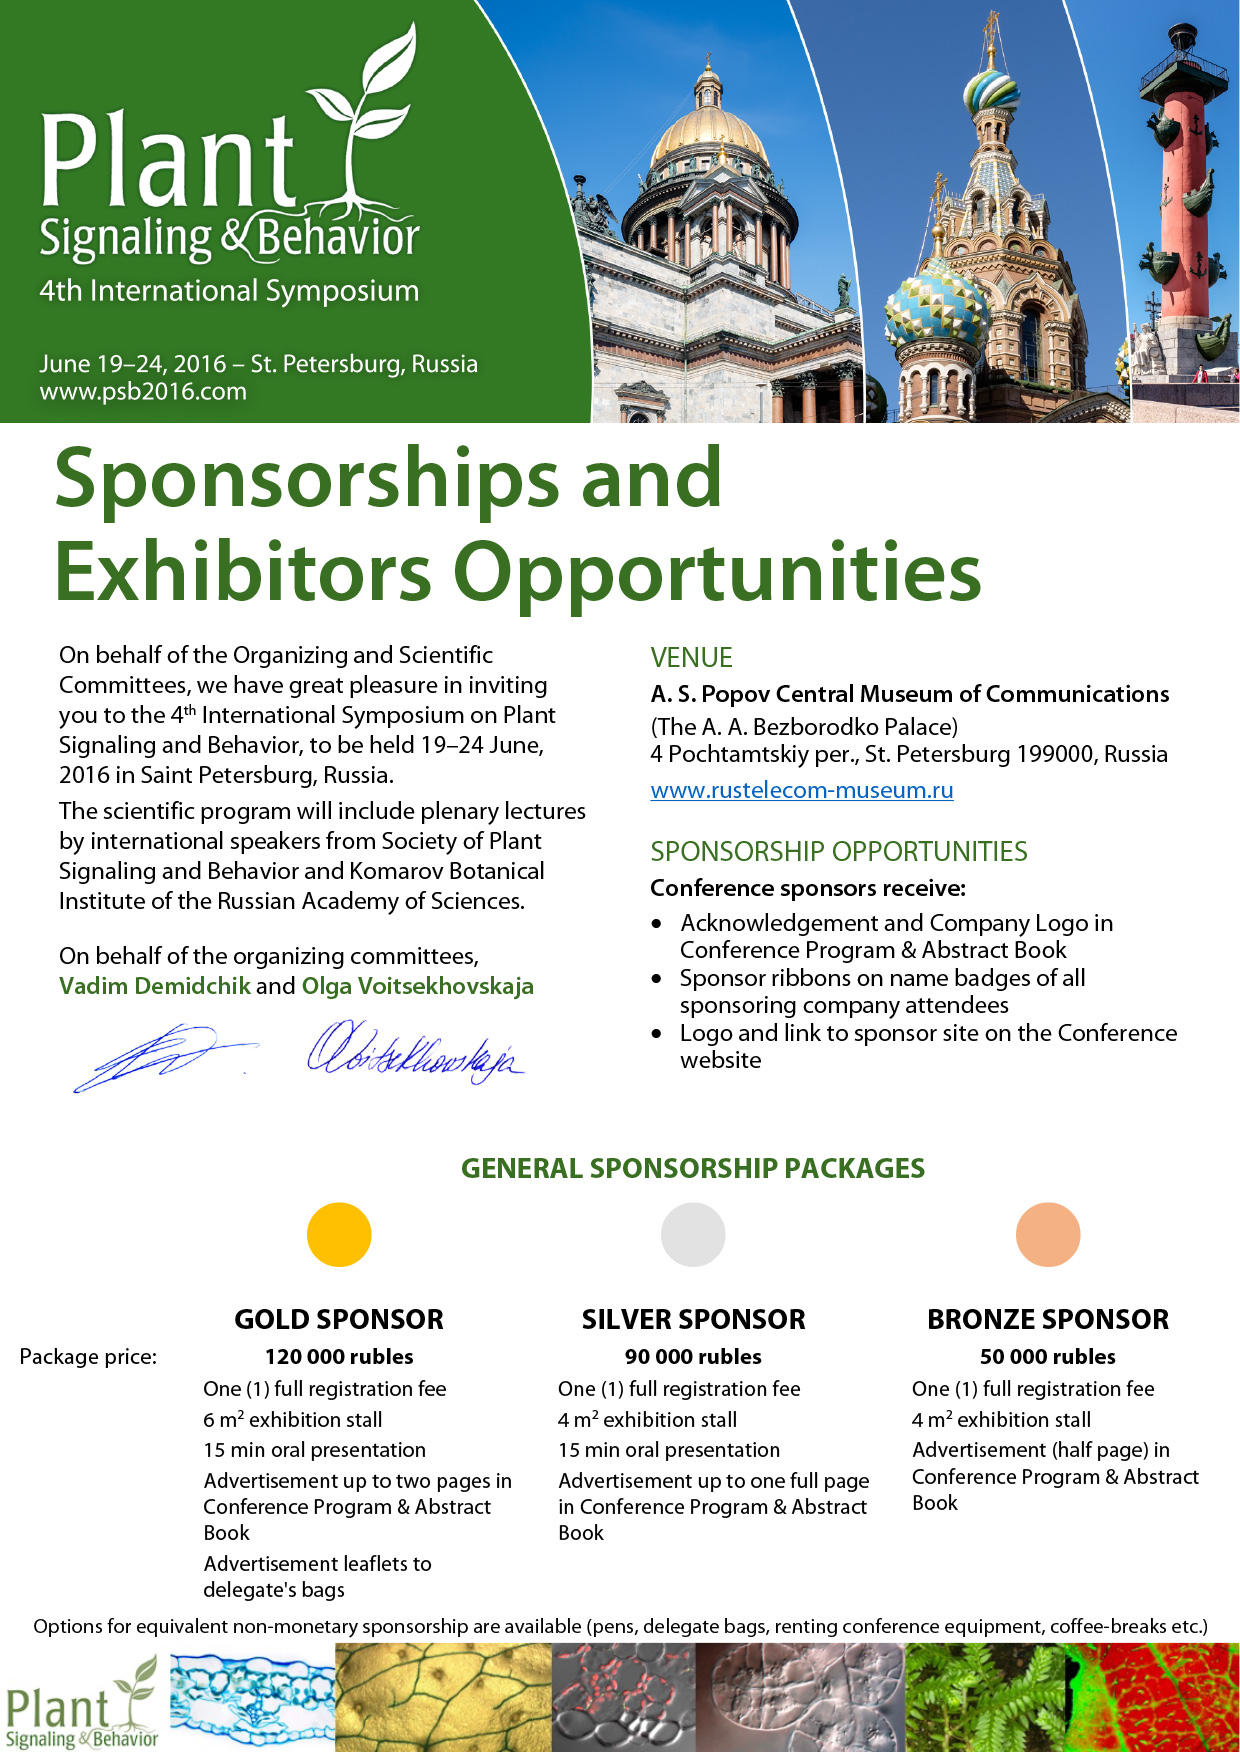 PSB2016 Information for Sponsors